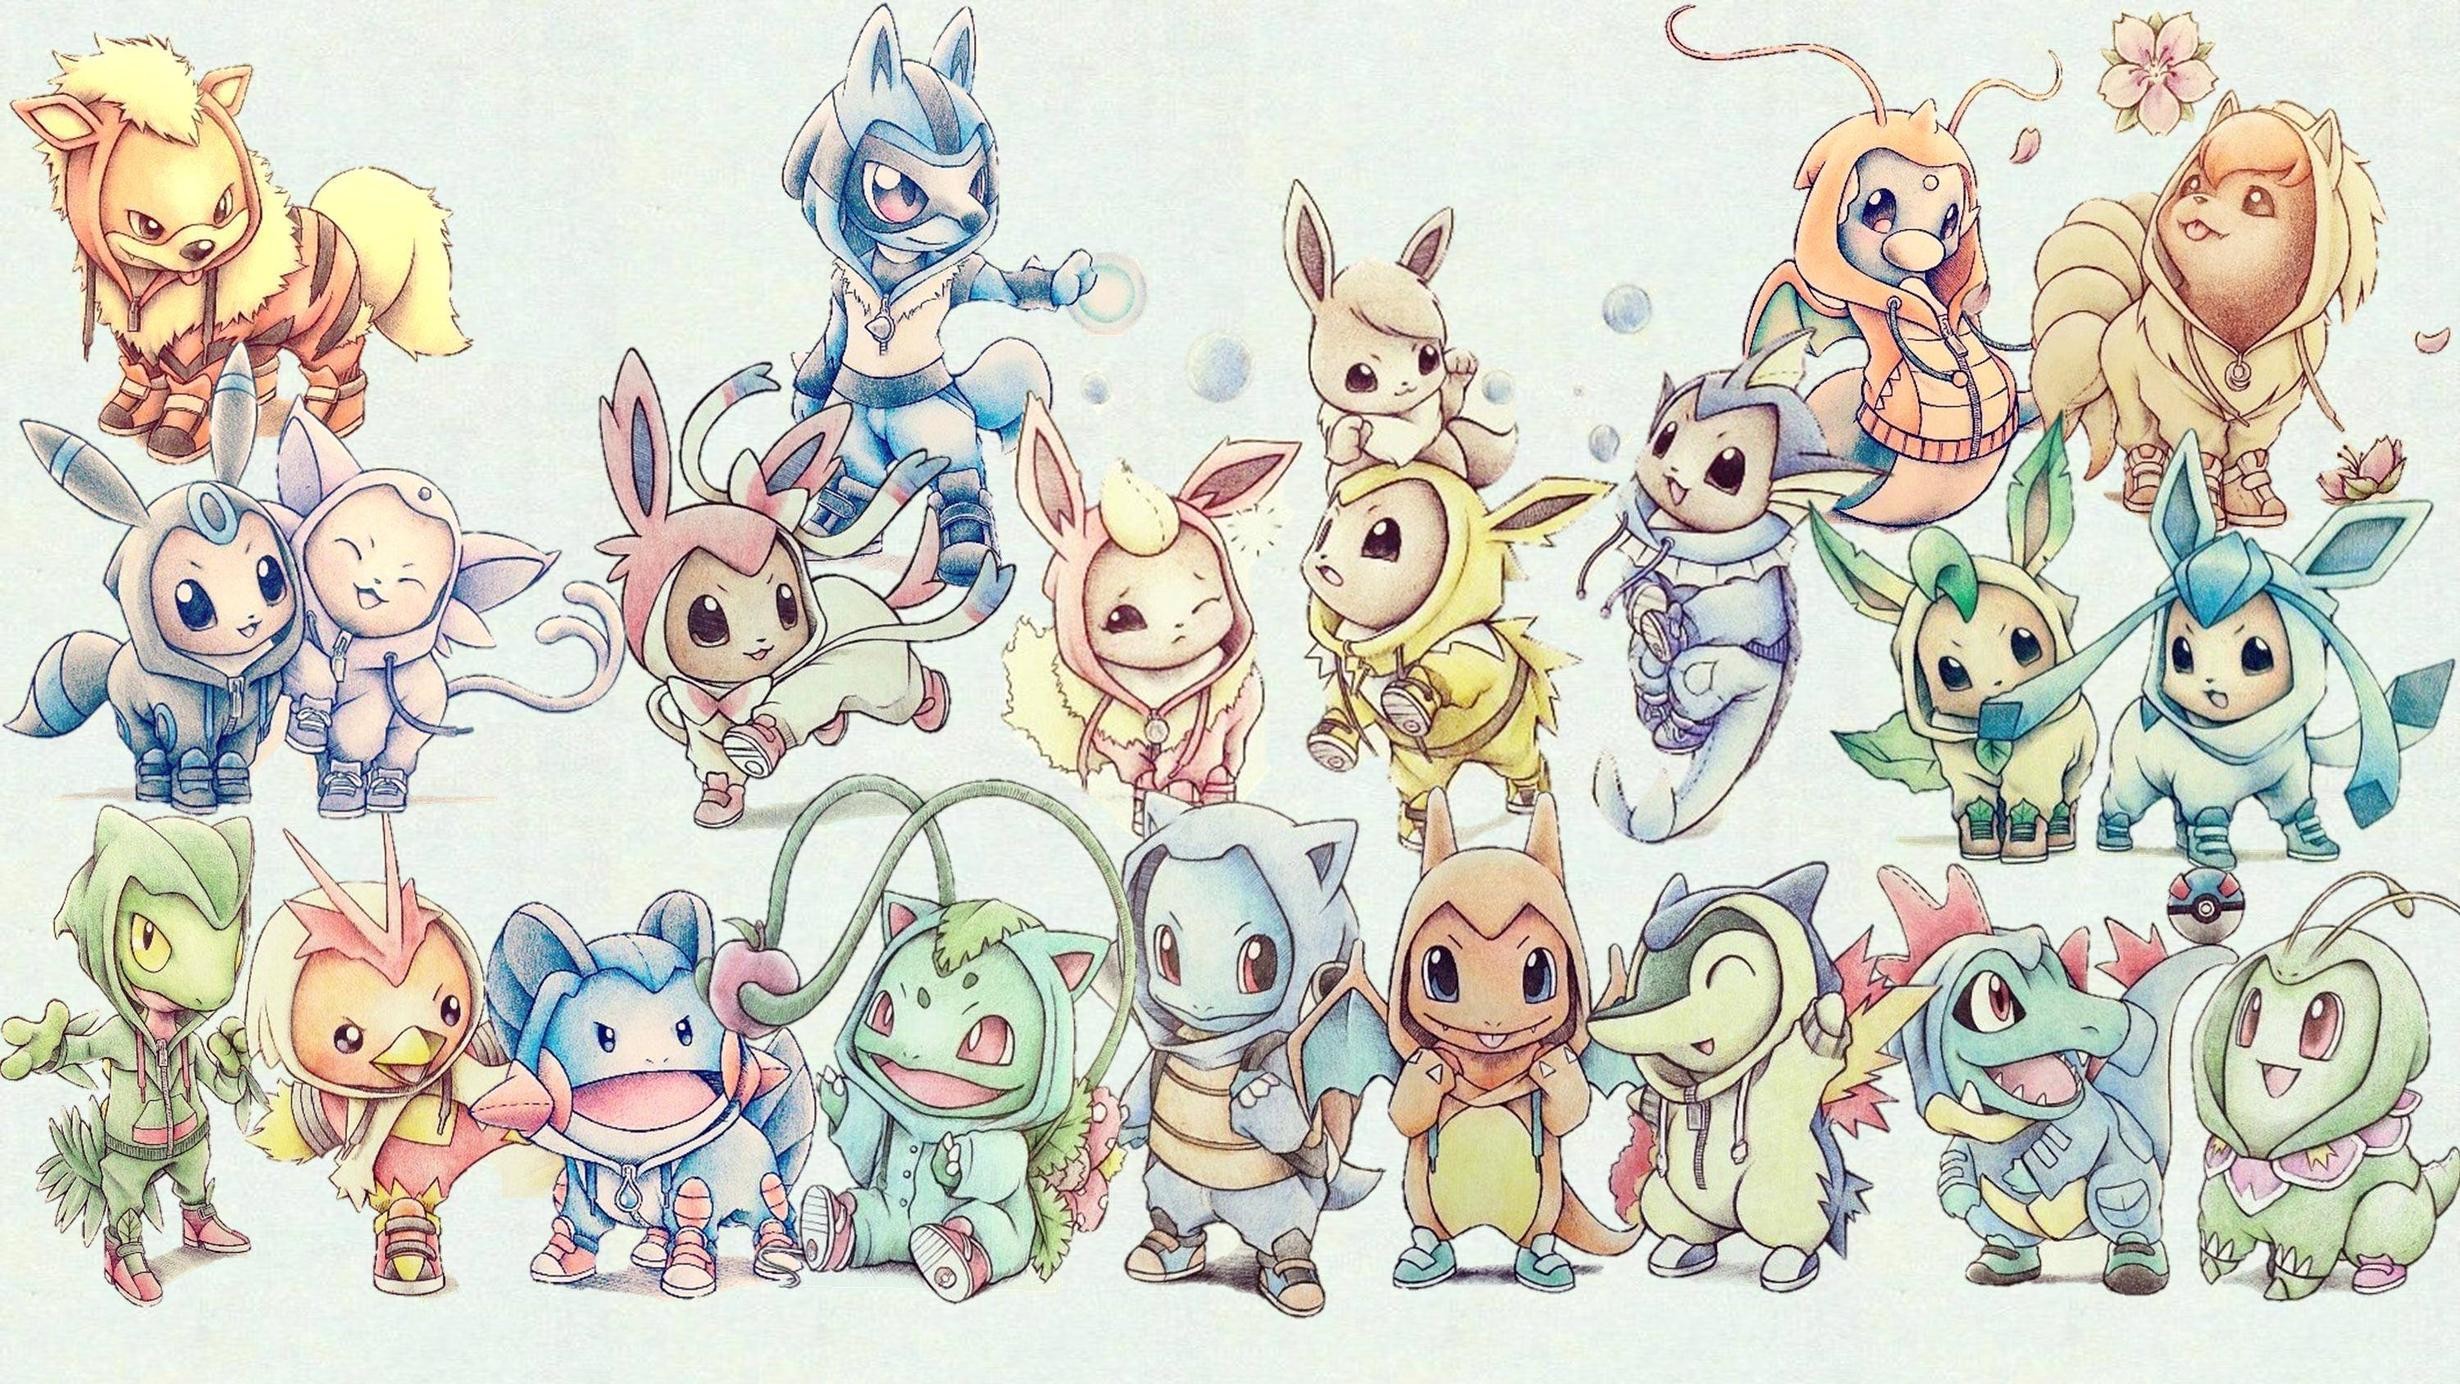 Cute Pokemon Wallpaper Hd Wallpapers in Games 1024x768PX